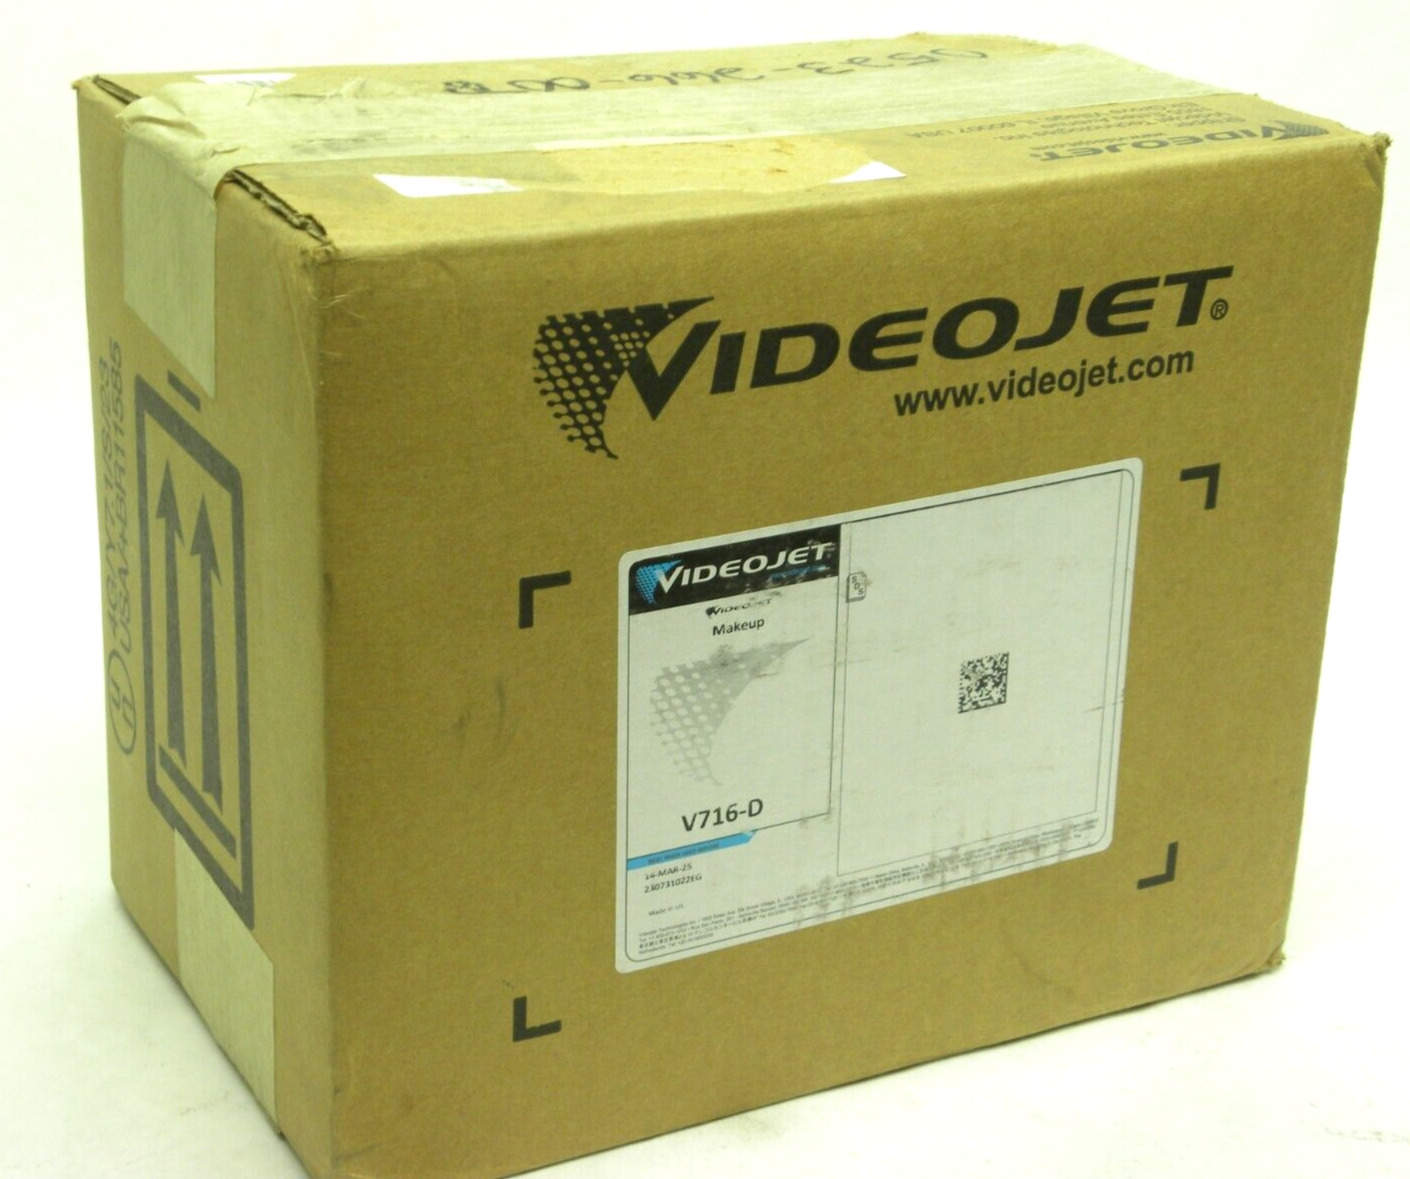 Case of 6 - Videojet V716-D Continuous Inkjet Make-Up (Expires - March 2025) HR